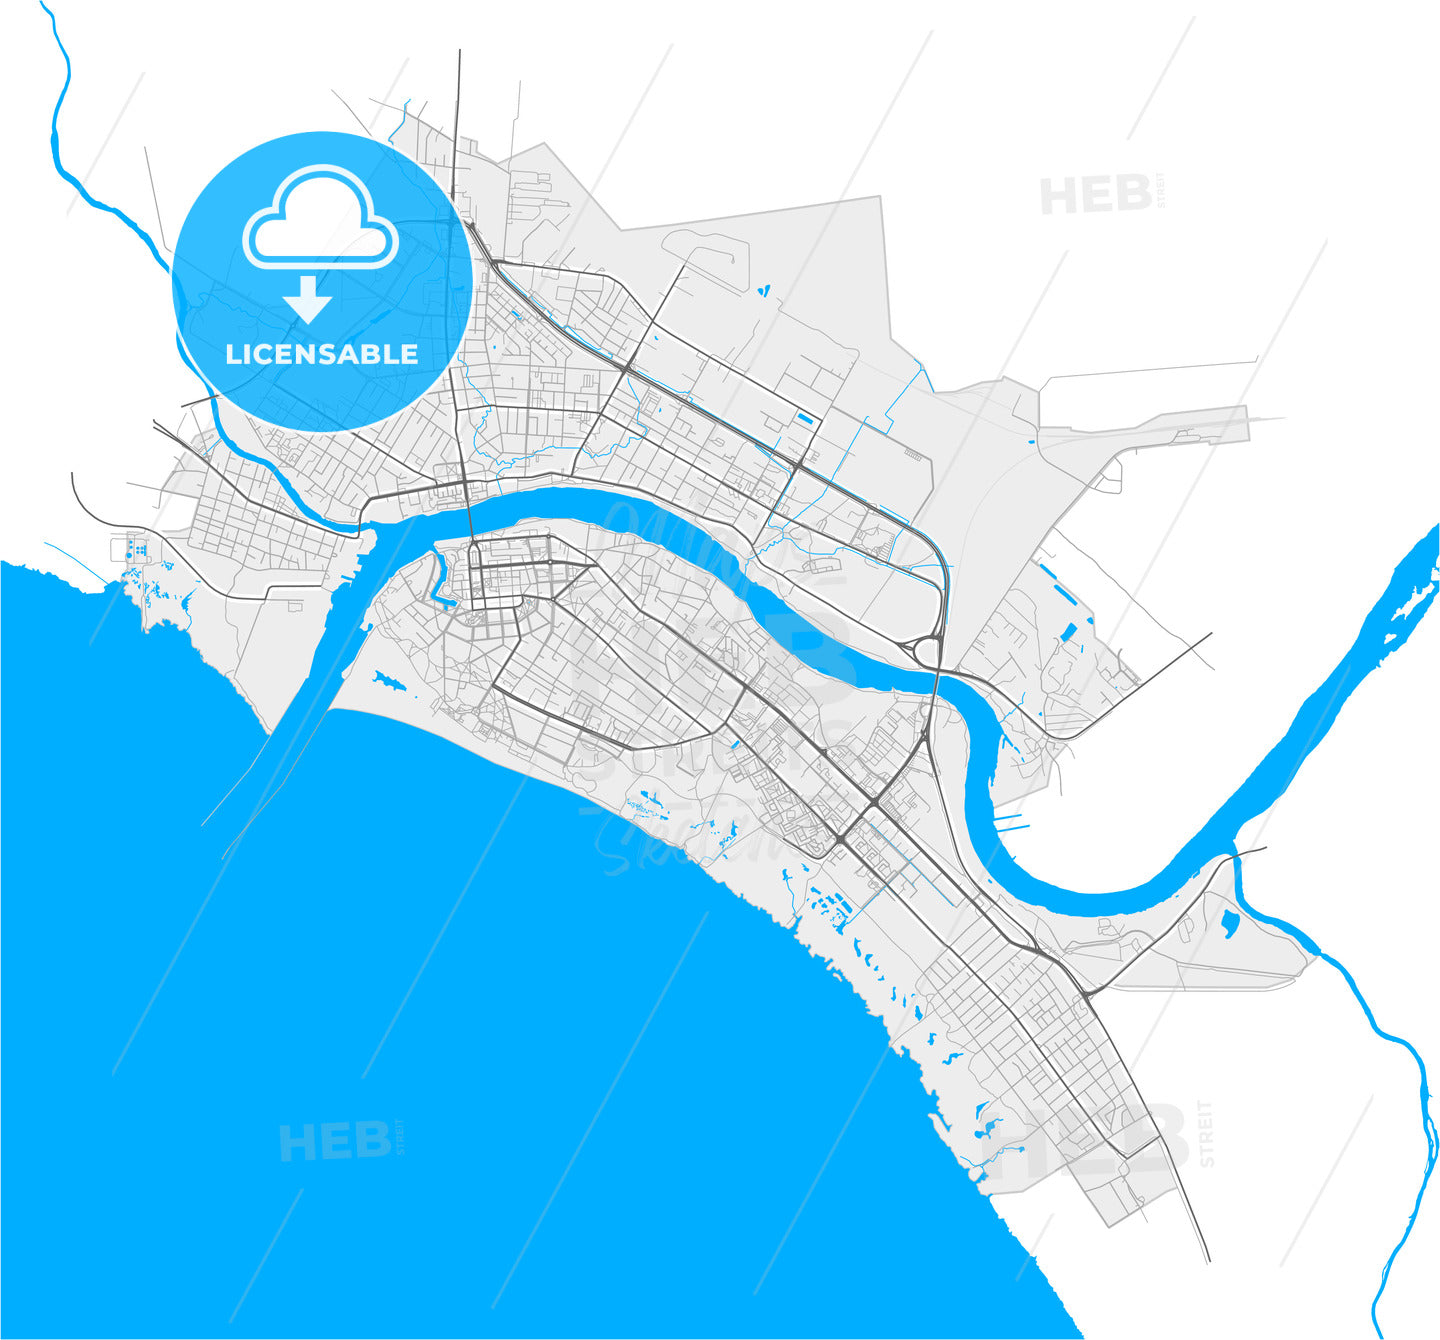 Pärnu, Pärnu, Estonia, high quality vector map